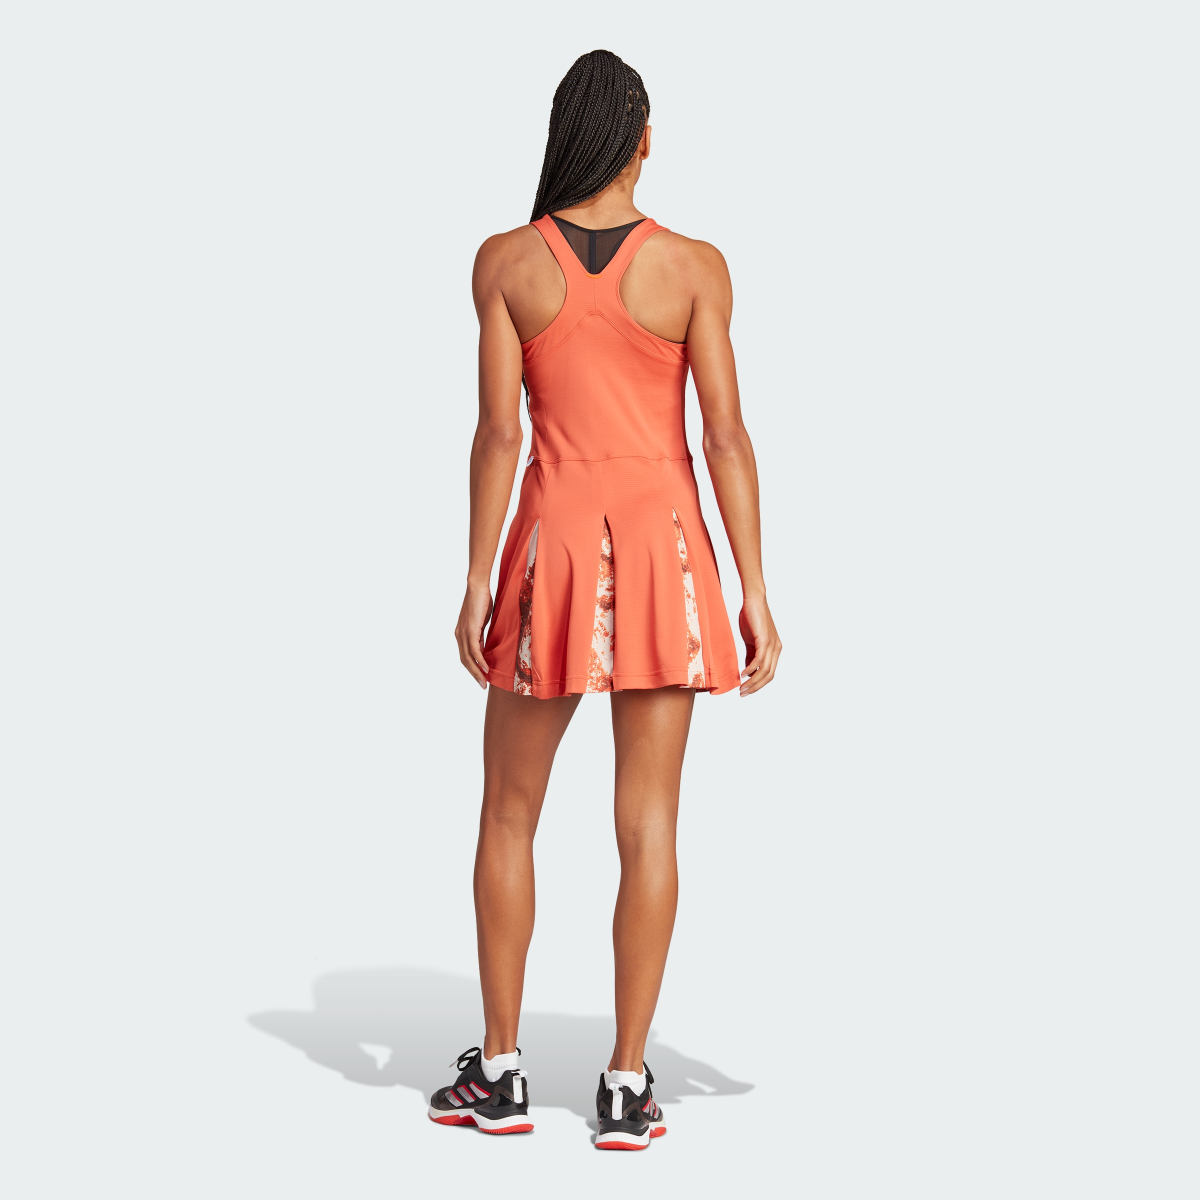 Adidas Tennis Paris Made to Be Remade Dress. 4